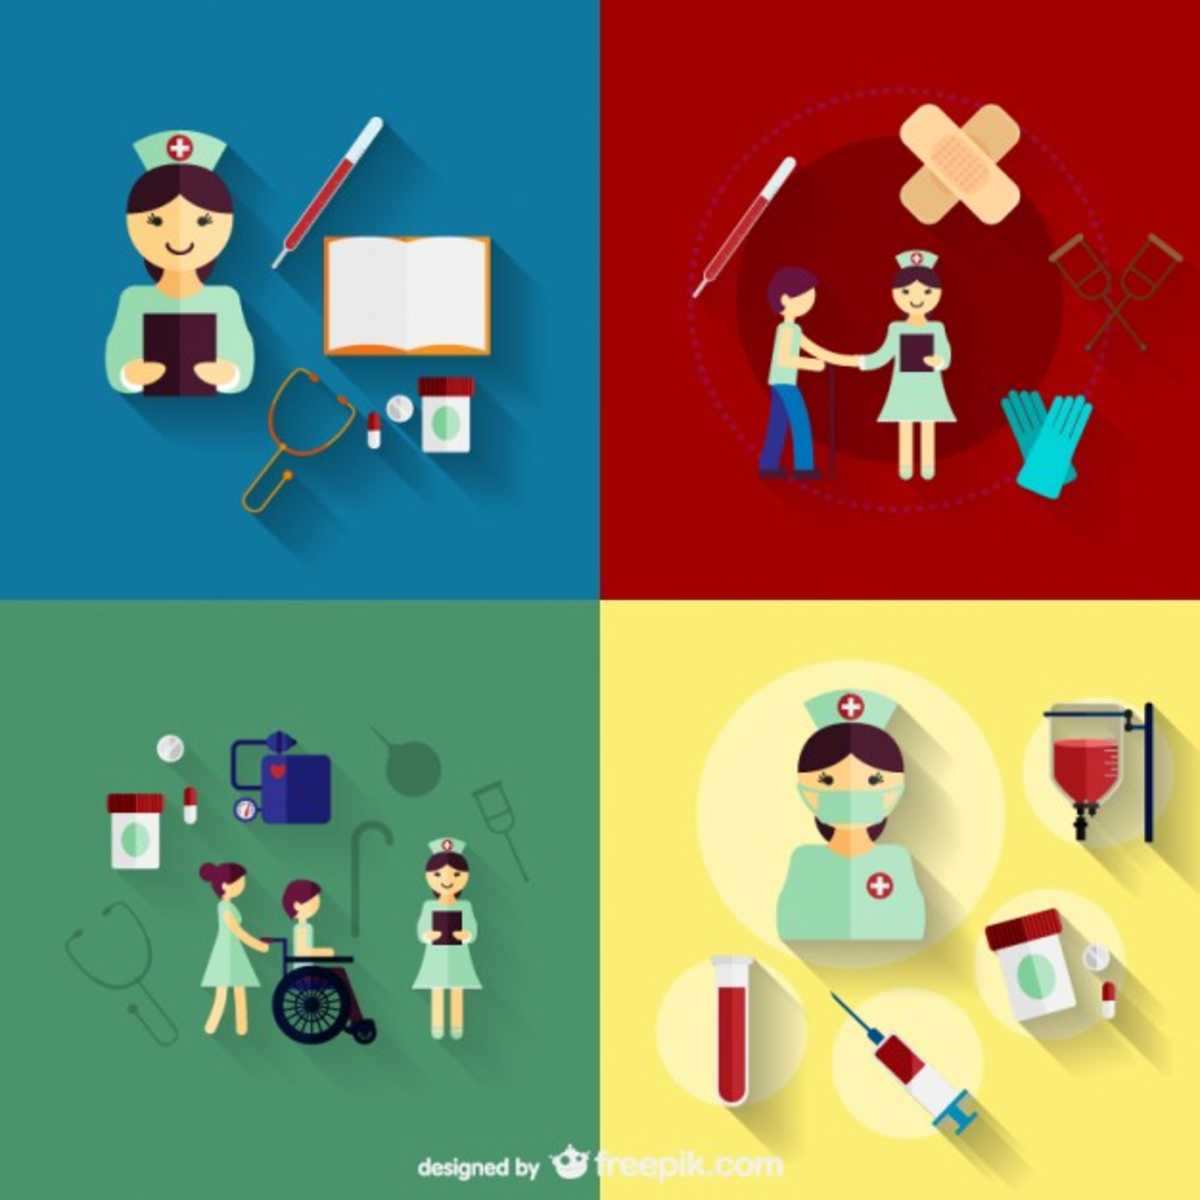 Diversos ícones de profissionais de Enfermagem e elementos do trabalho nessa área, como estetoscópio, seringa, esparadrapo e bolsa de sangue, além de situações de atendimento